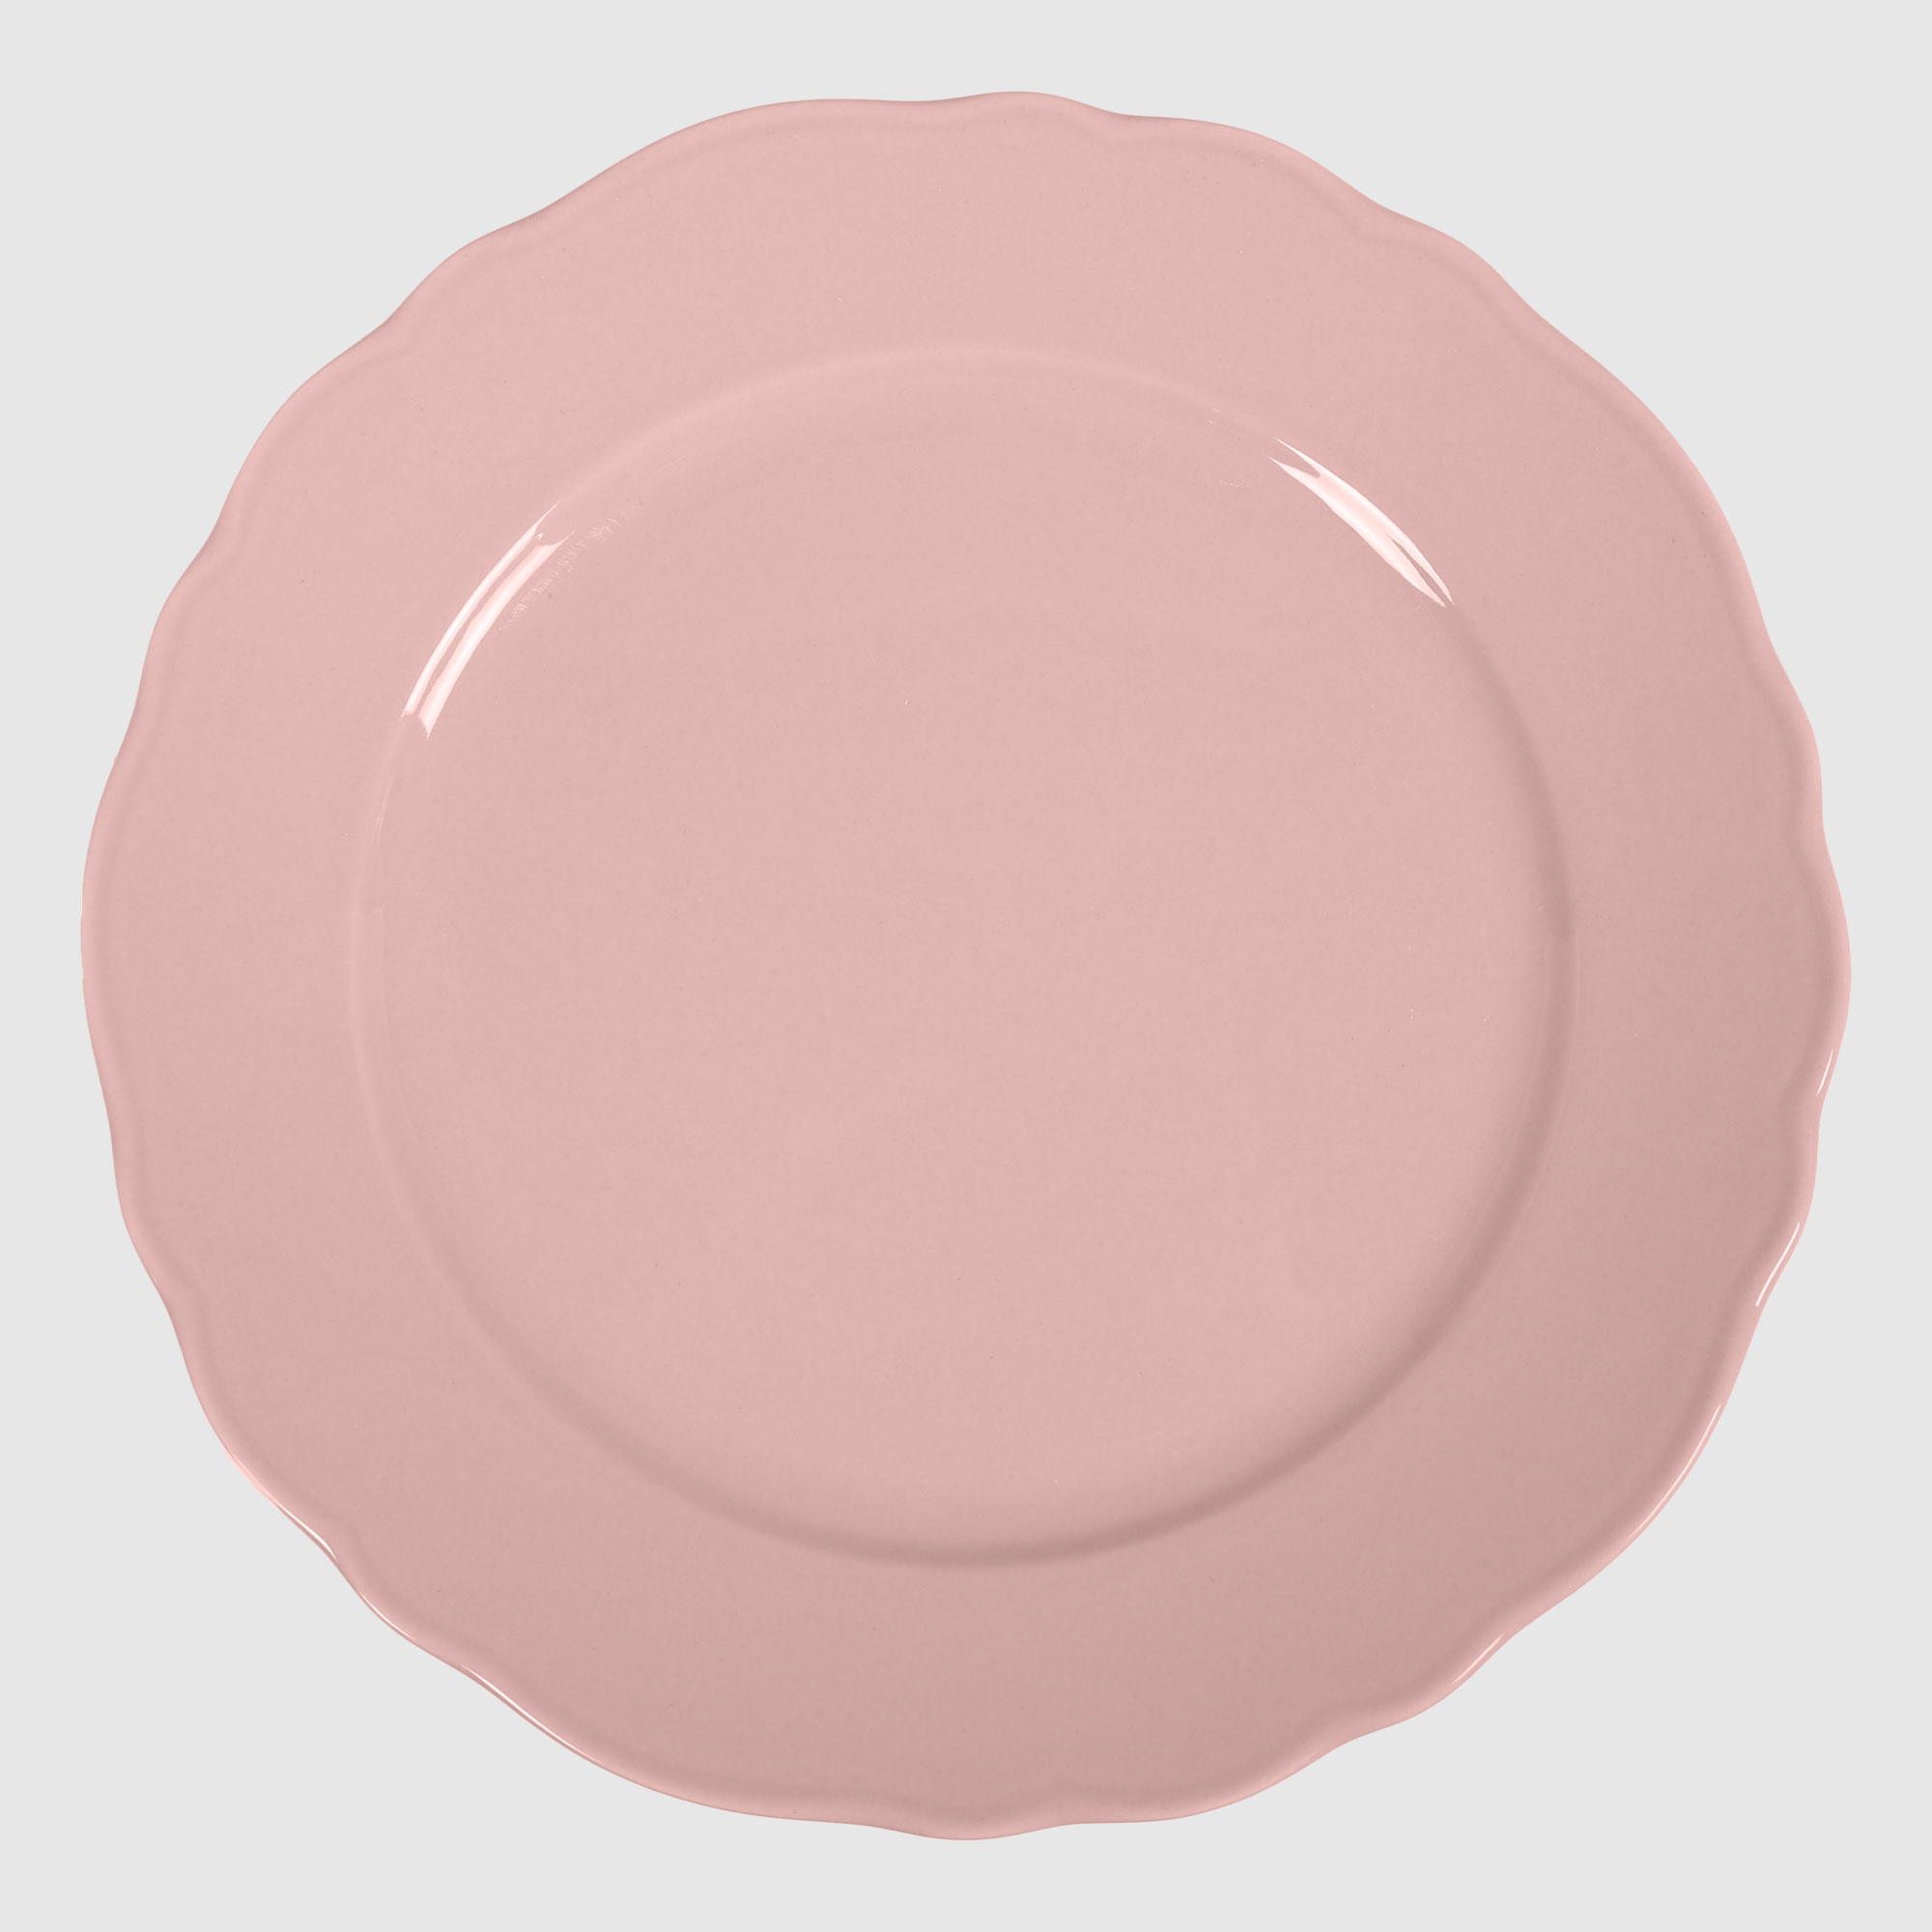 тарелка бумажная 1 год розовая 18 см 10 шт Тарелка Kutahya porselen Lar розовая 26 см